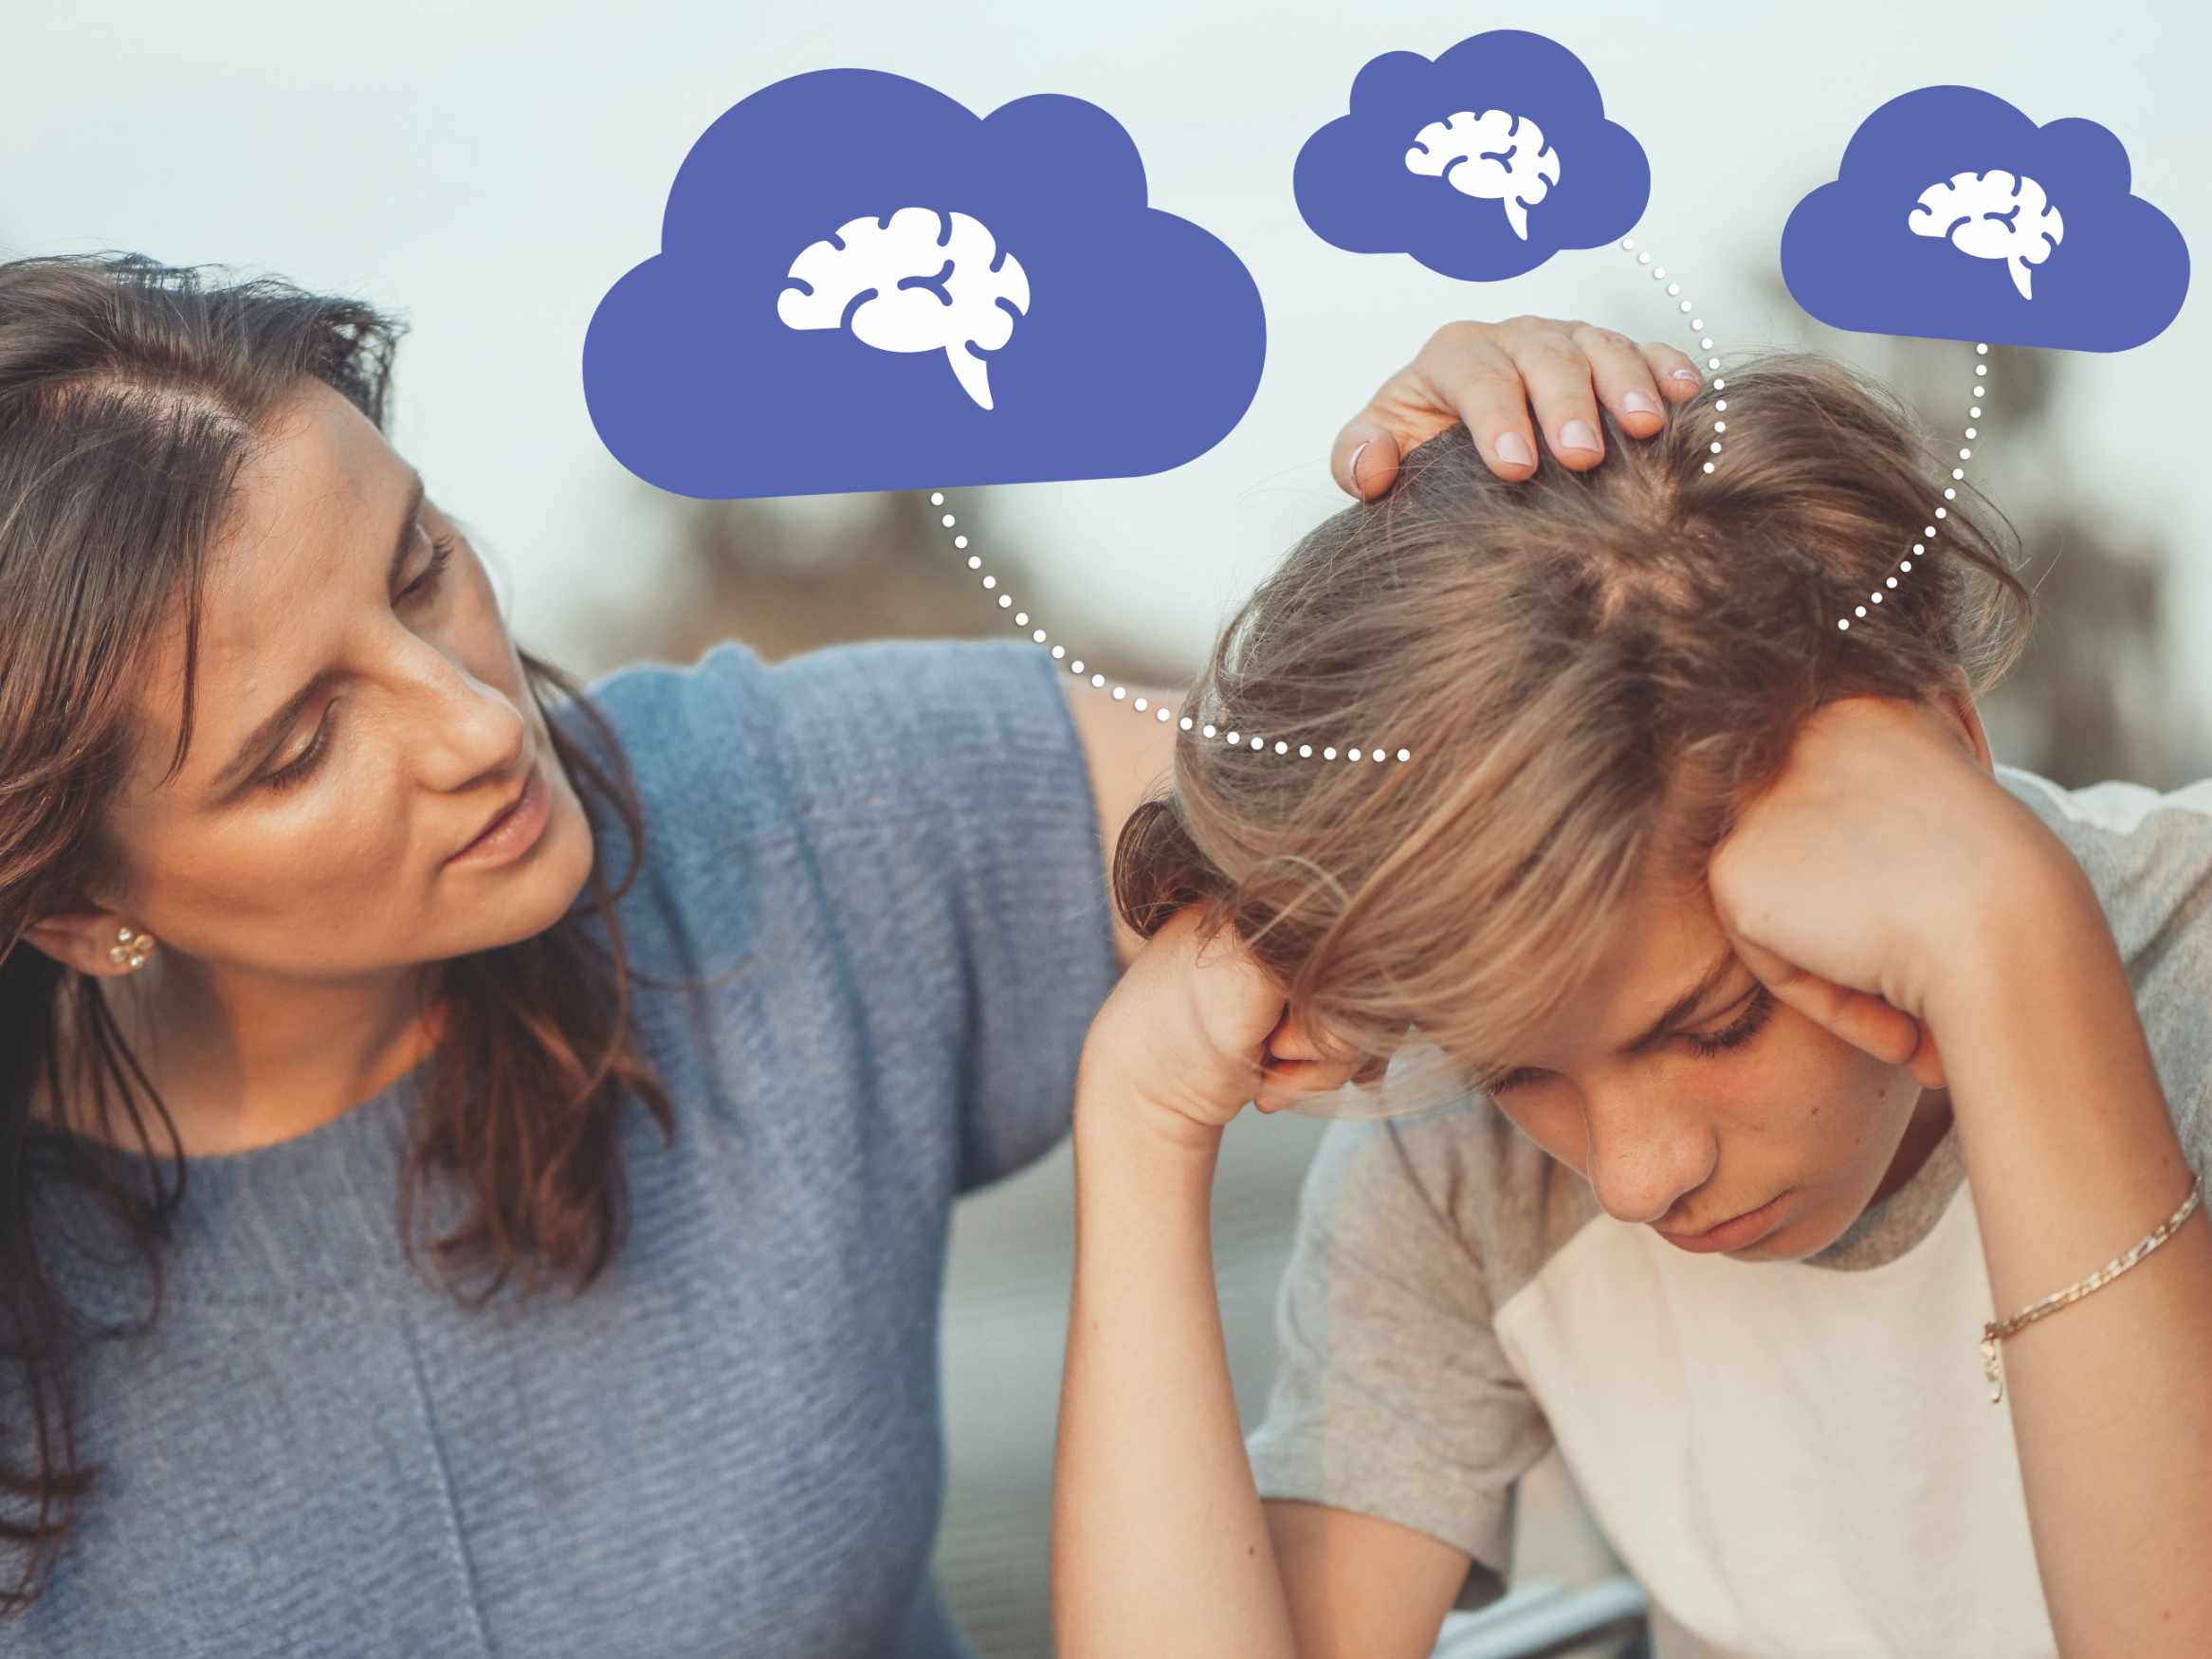 Una madre poggia la mano sulla testa del figlio stressato. Ci sono alcune nuvolette viola attorno alla testa del bambino.